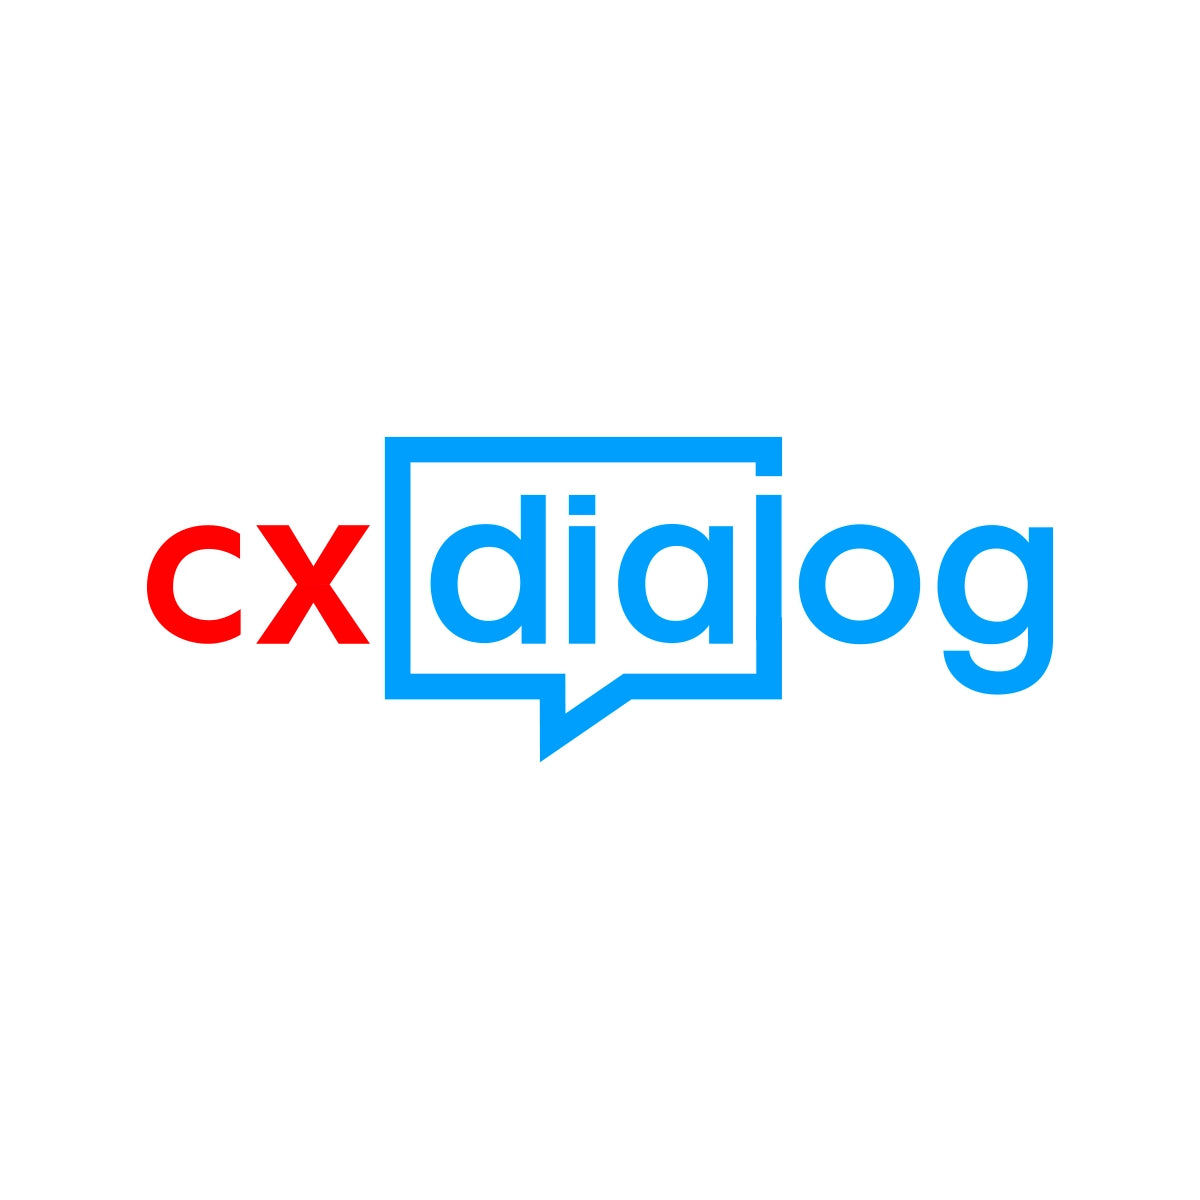 CXDIALOG.com